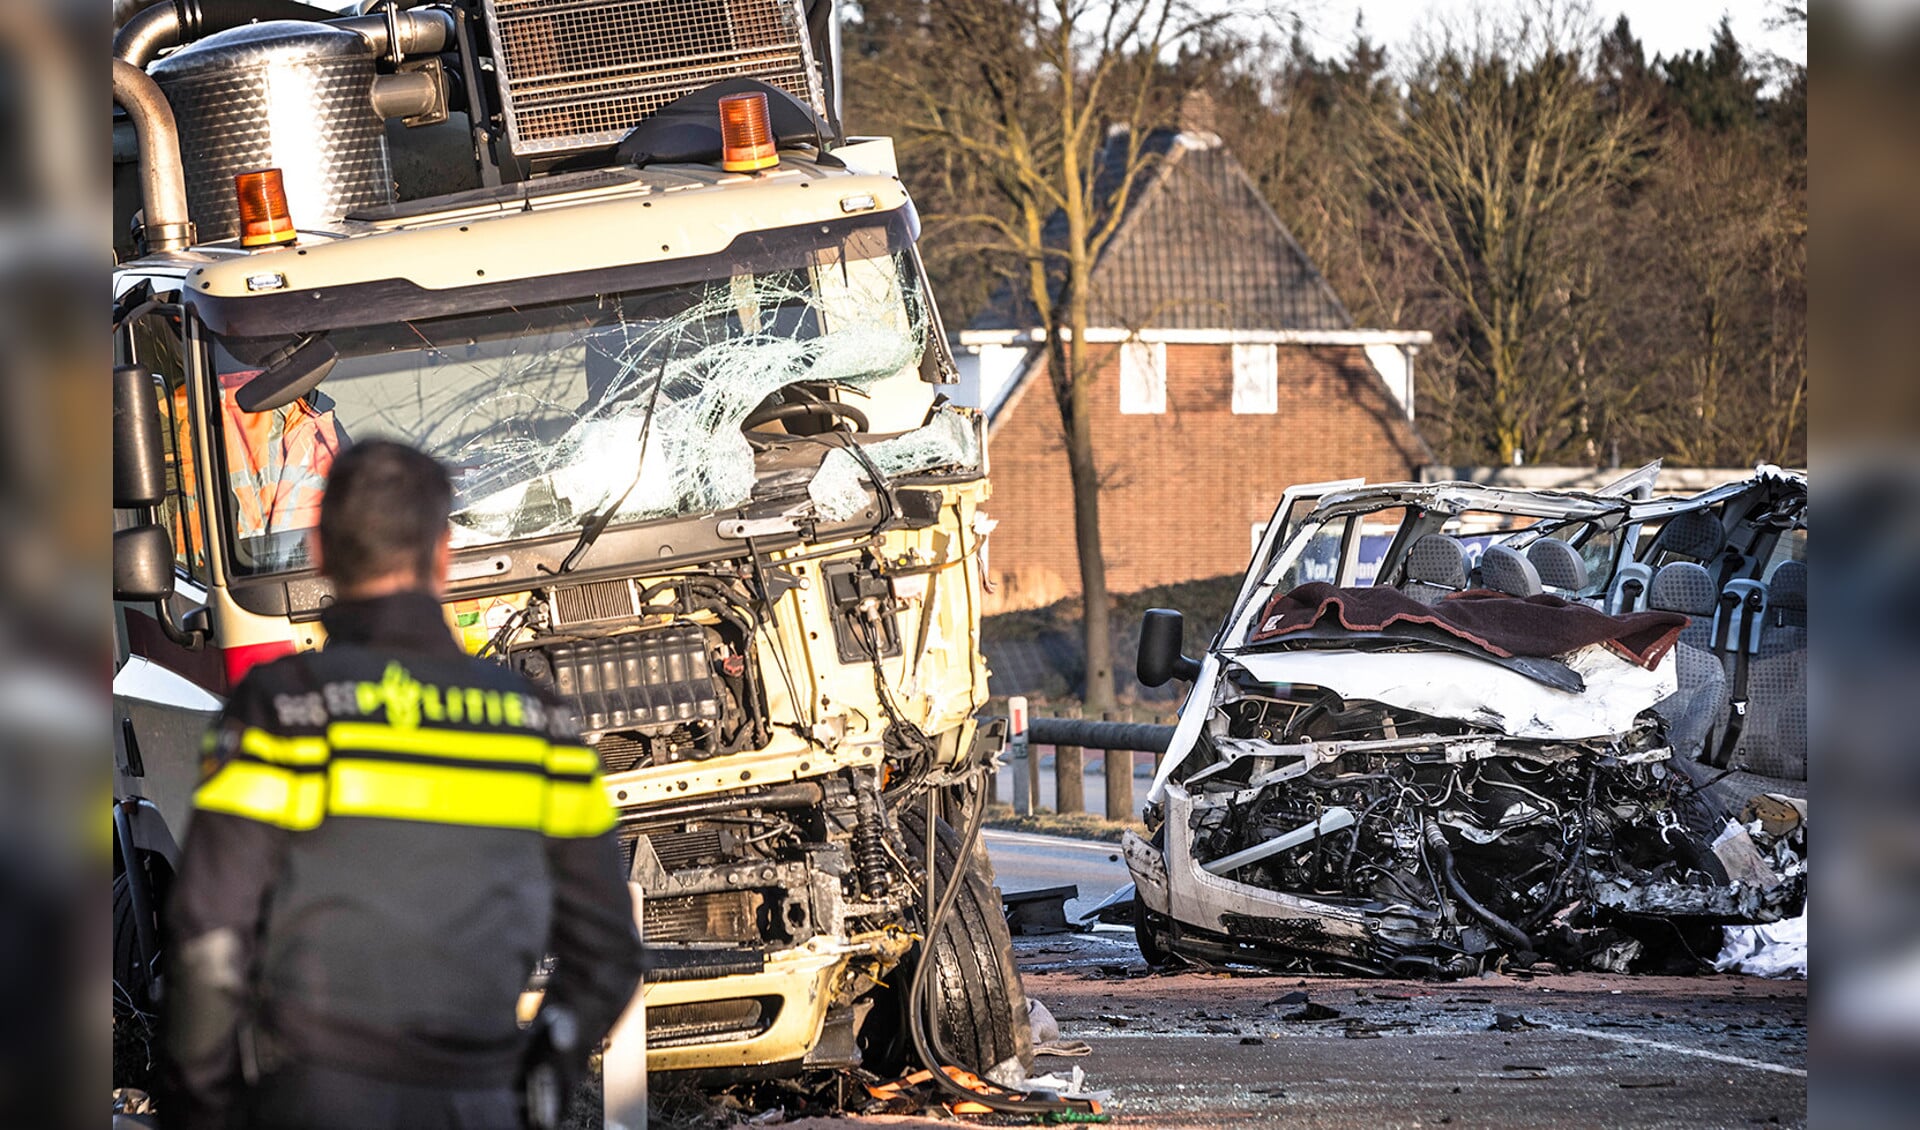 Een frontale aanrijding tussen een bestelbusje en een vrachtwagen in Helmond heeft vijf mensen het leven gekost. Ze zaten allemaal in het busje. Drie andere inzittenden van het voertuig raakten zwaargewond. Ook de chauffeur van de vrachtwagen liep zware verwondingen op. Hij zat bekneld en is door hulpdiensten bevrijd. De weg werd in beide richtingen afgesloten. <